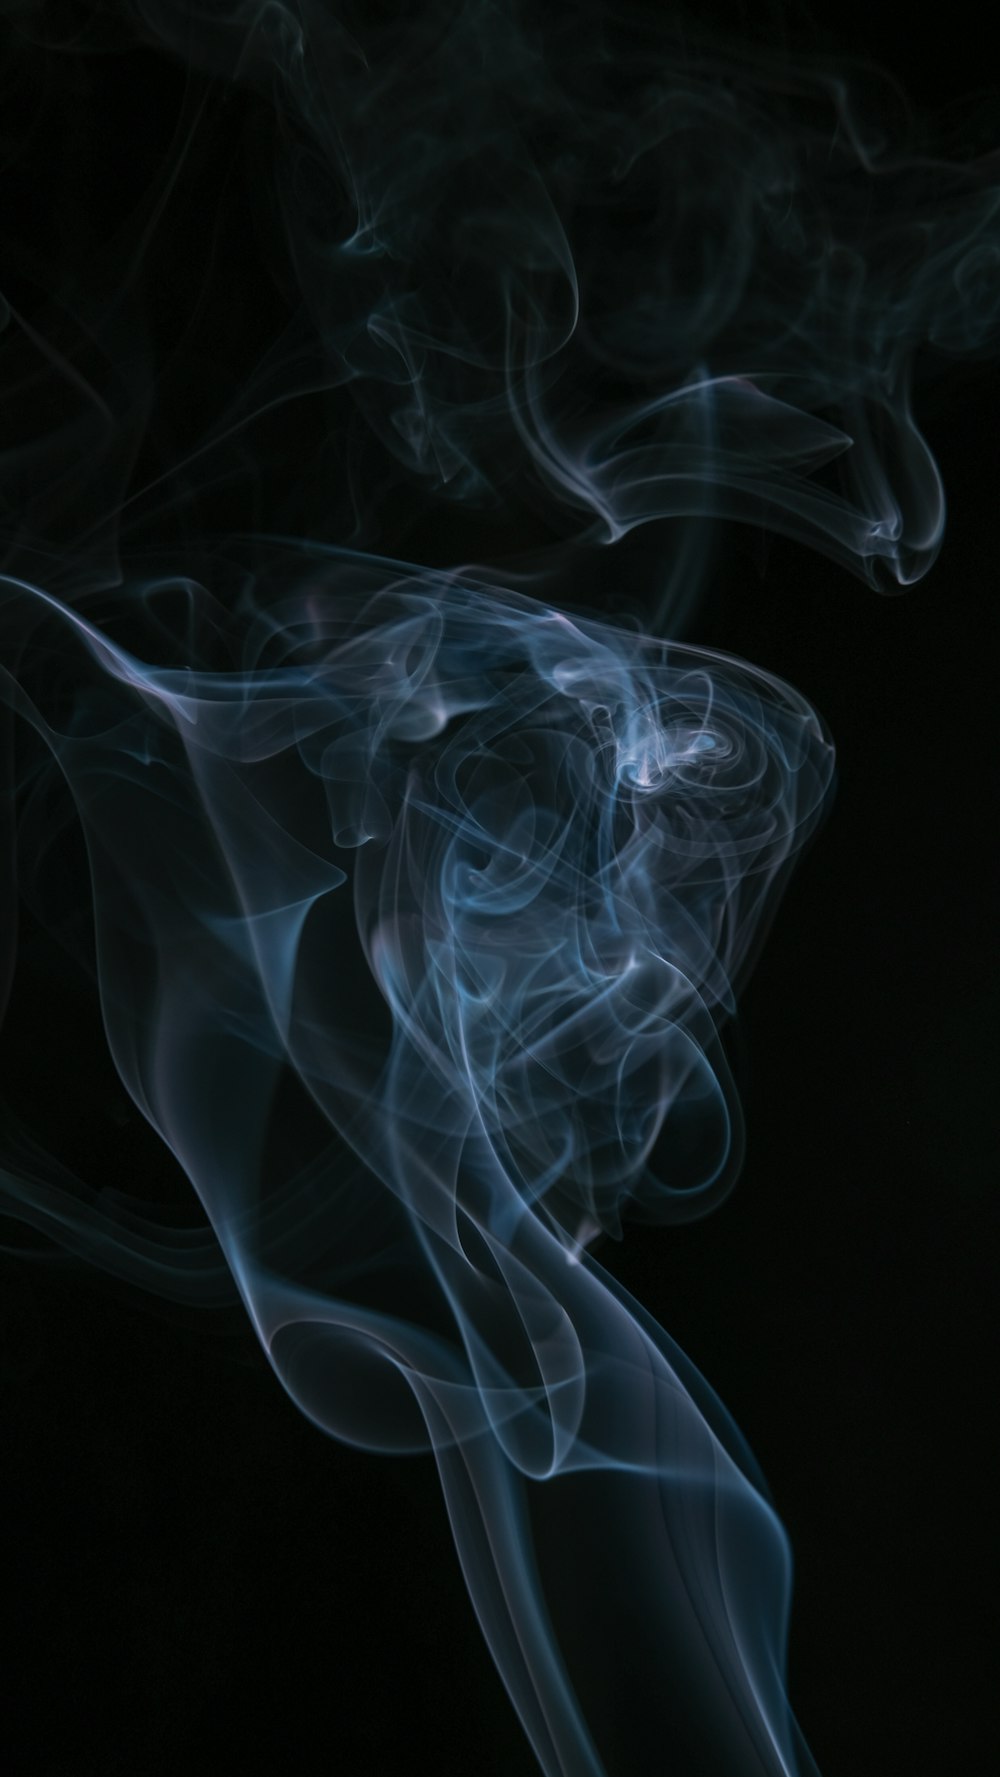 Hơi thuốc là điều mà không ai mong muốn, nhưng một số hình ảnh về khói thuốc trong studio làm nên tác phẩm nghệ thuật tuyệt đẹp. Cùng khám phá những hình ảnh ấn tượng và đầy tinh thần nghệ sĩ với chủ đề khói thuốc.